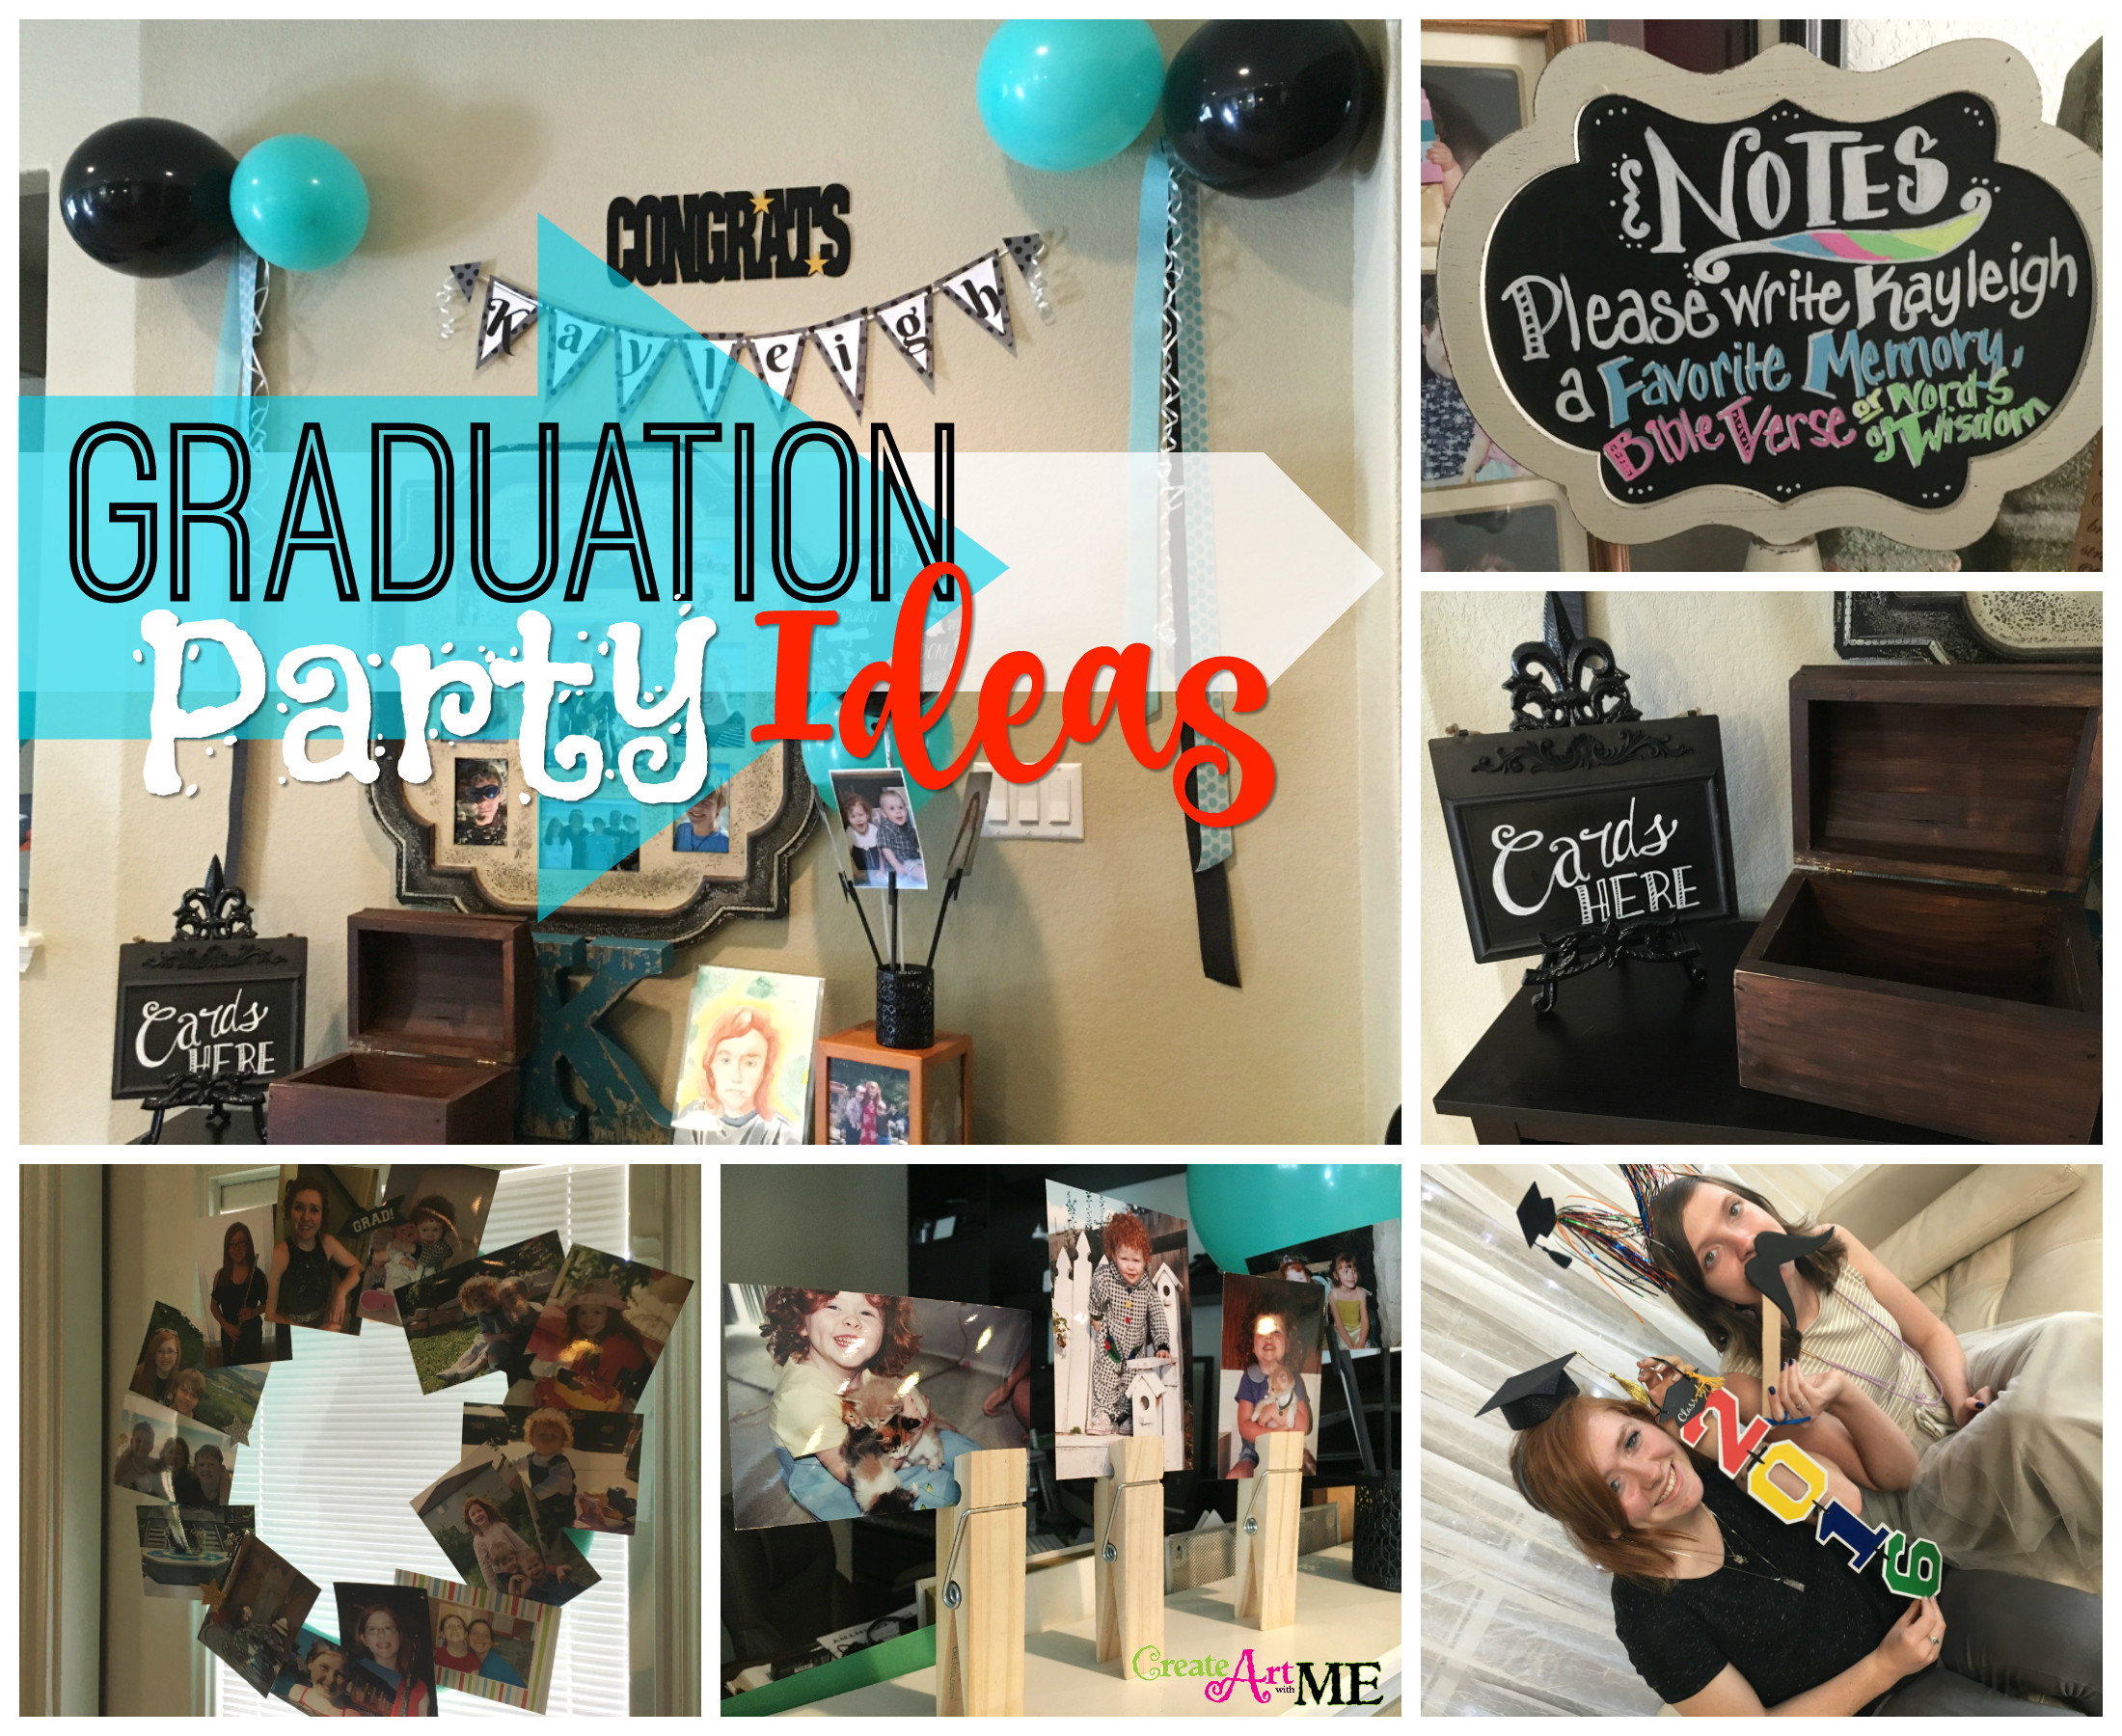 After Graduation Party Ideas
 Graduation Party Ideas